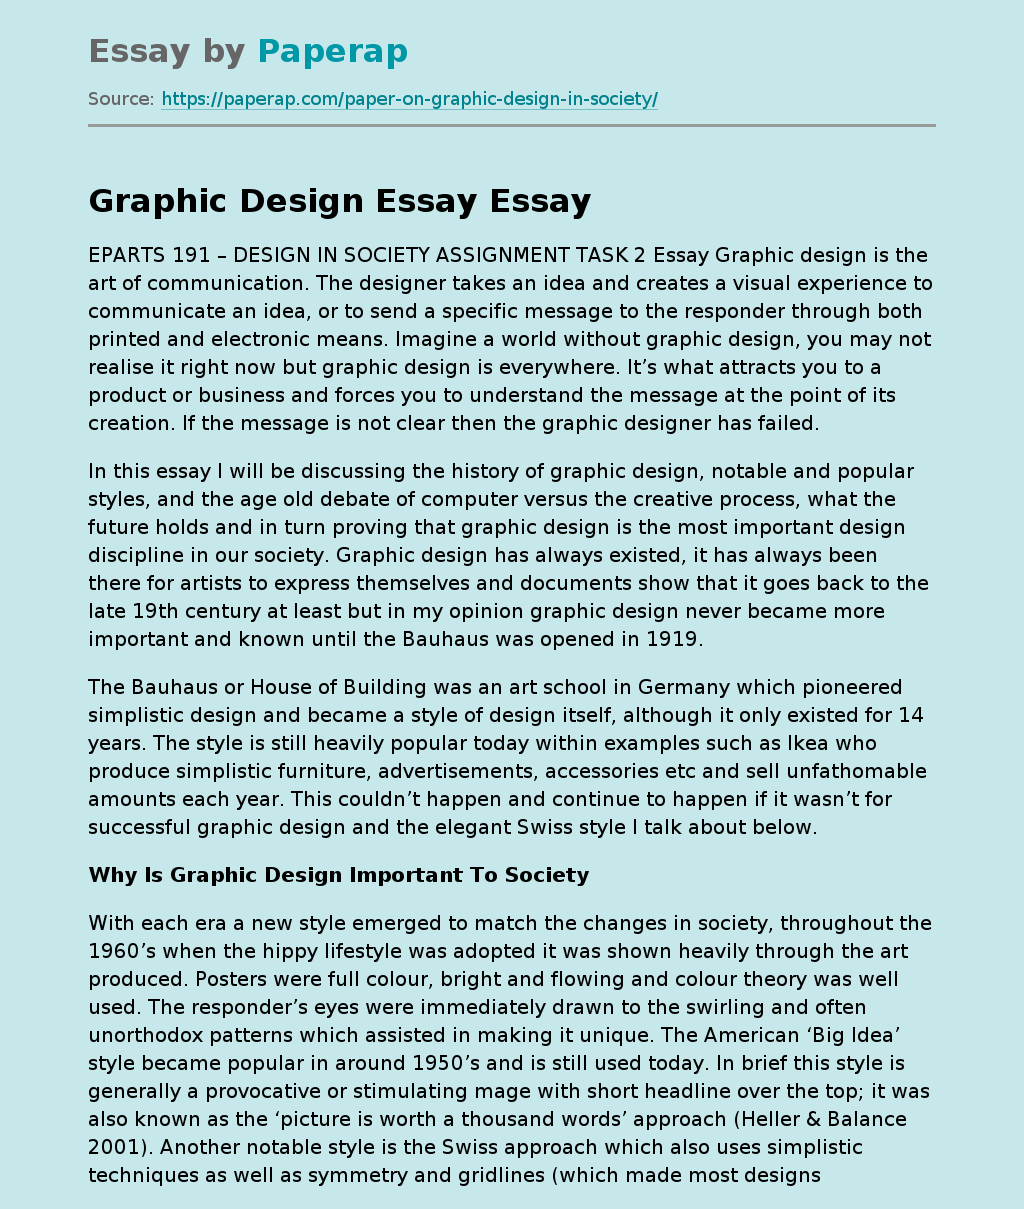 essay design